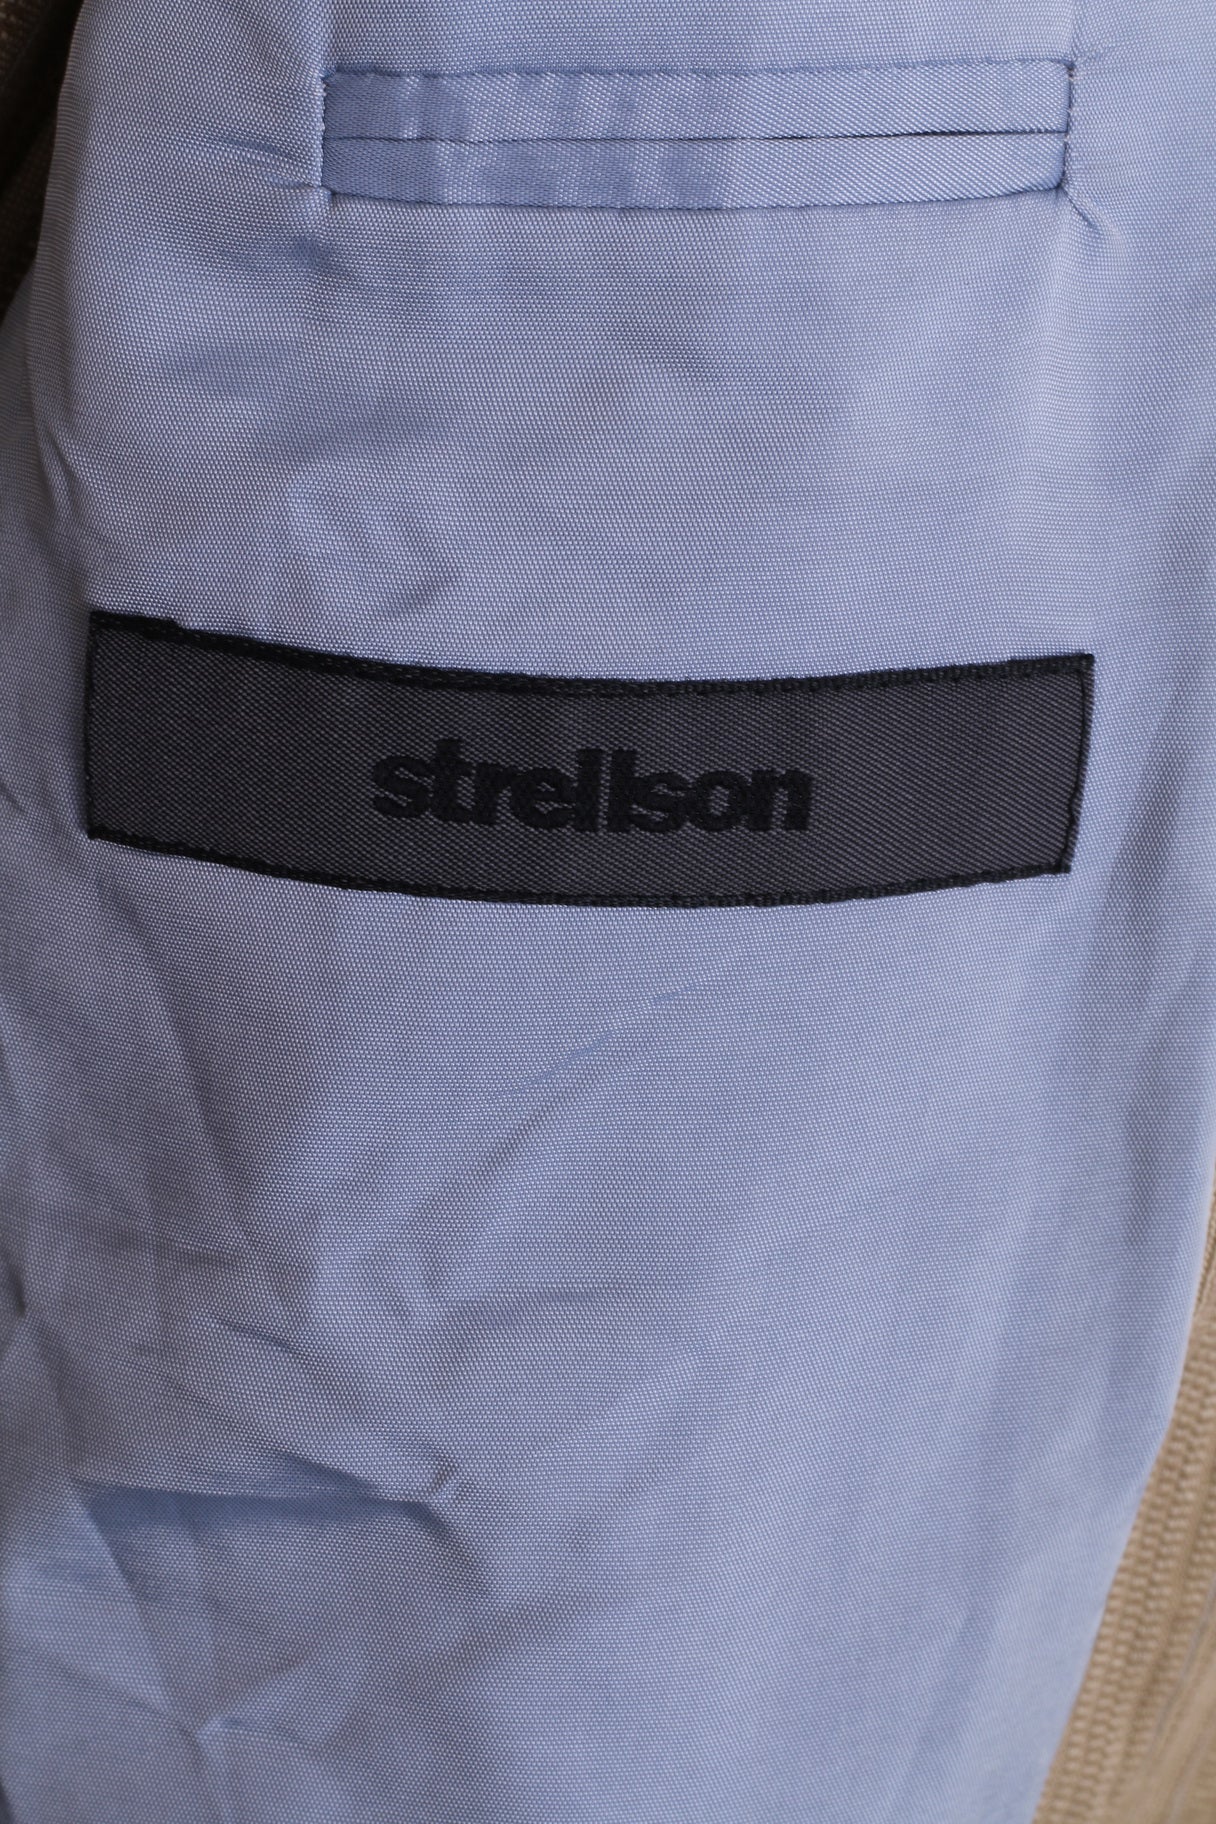 Strellson Hommes 48 M Blazer Veste Simple Boutonnage Beige Rayé Style Luccio Épaulettes En Coton 